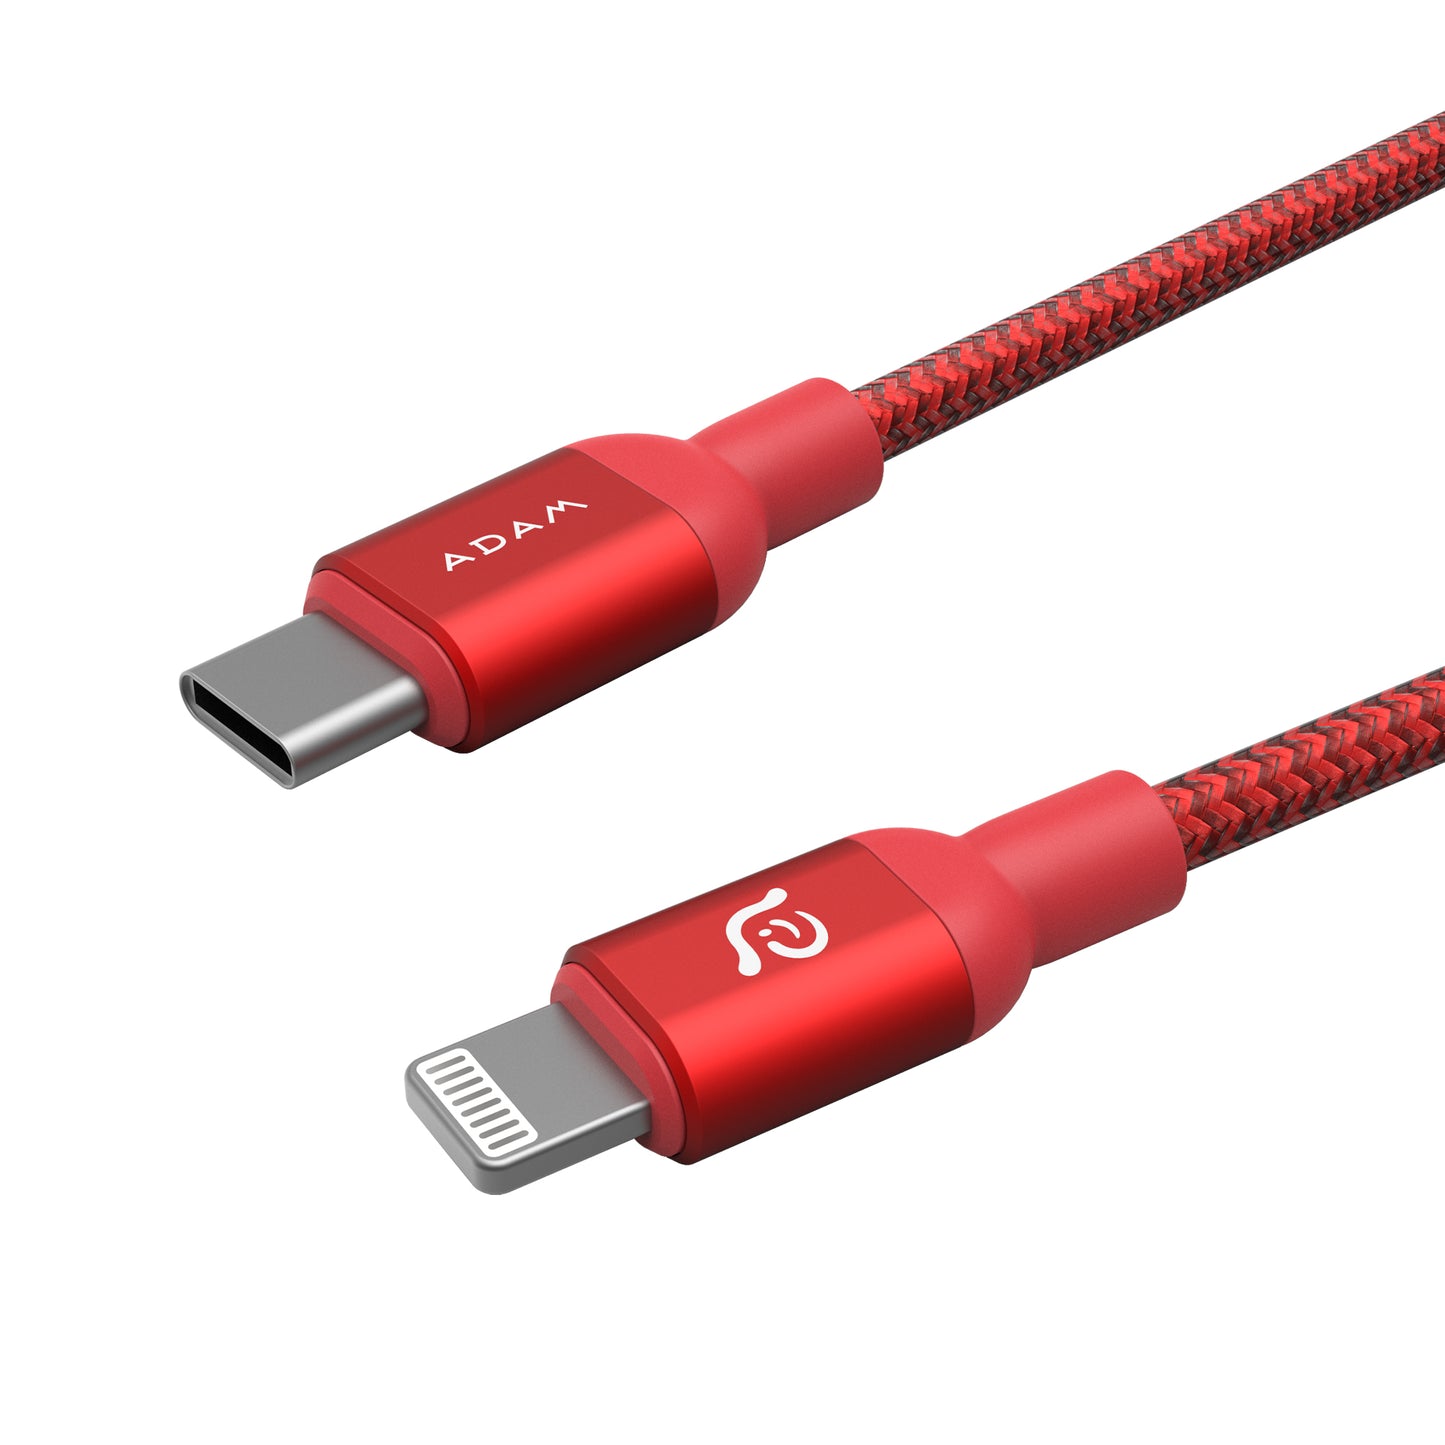 ADAM ELEMENTS PeAk II C200B USB-C to Lightning Cable 2m - Red